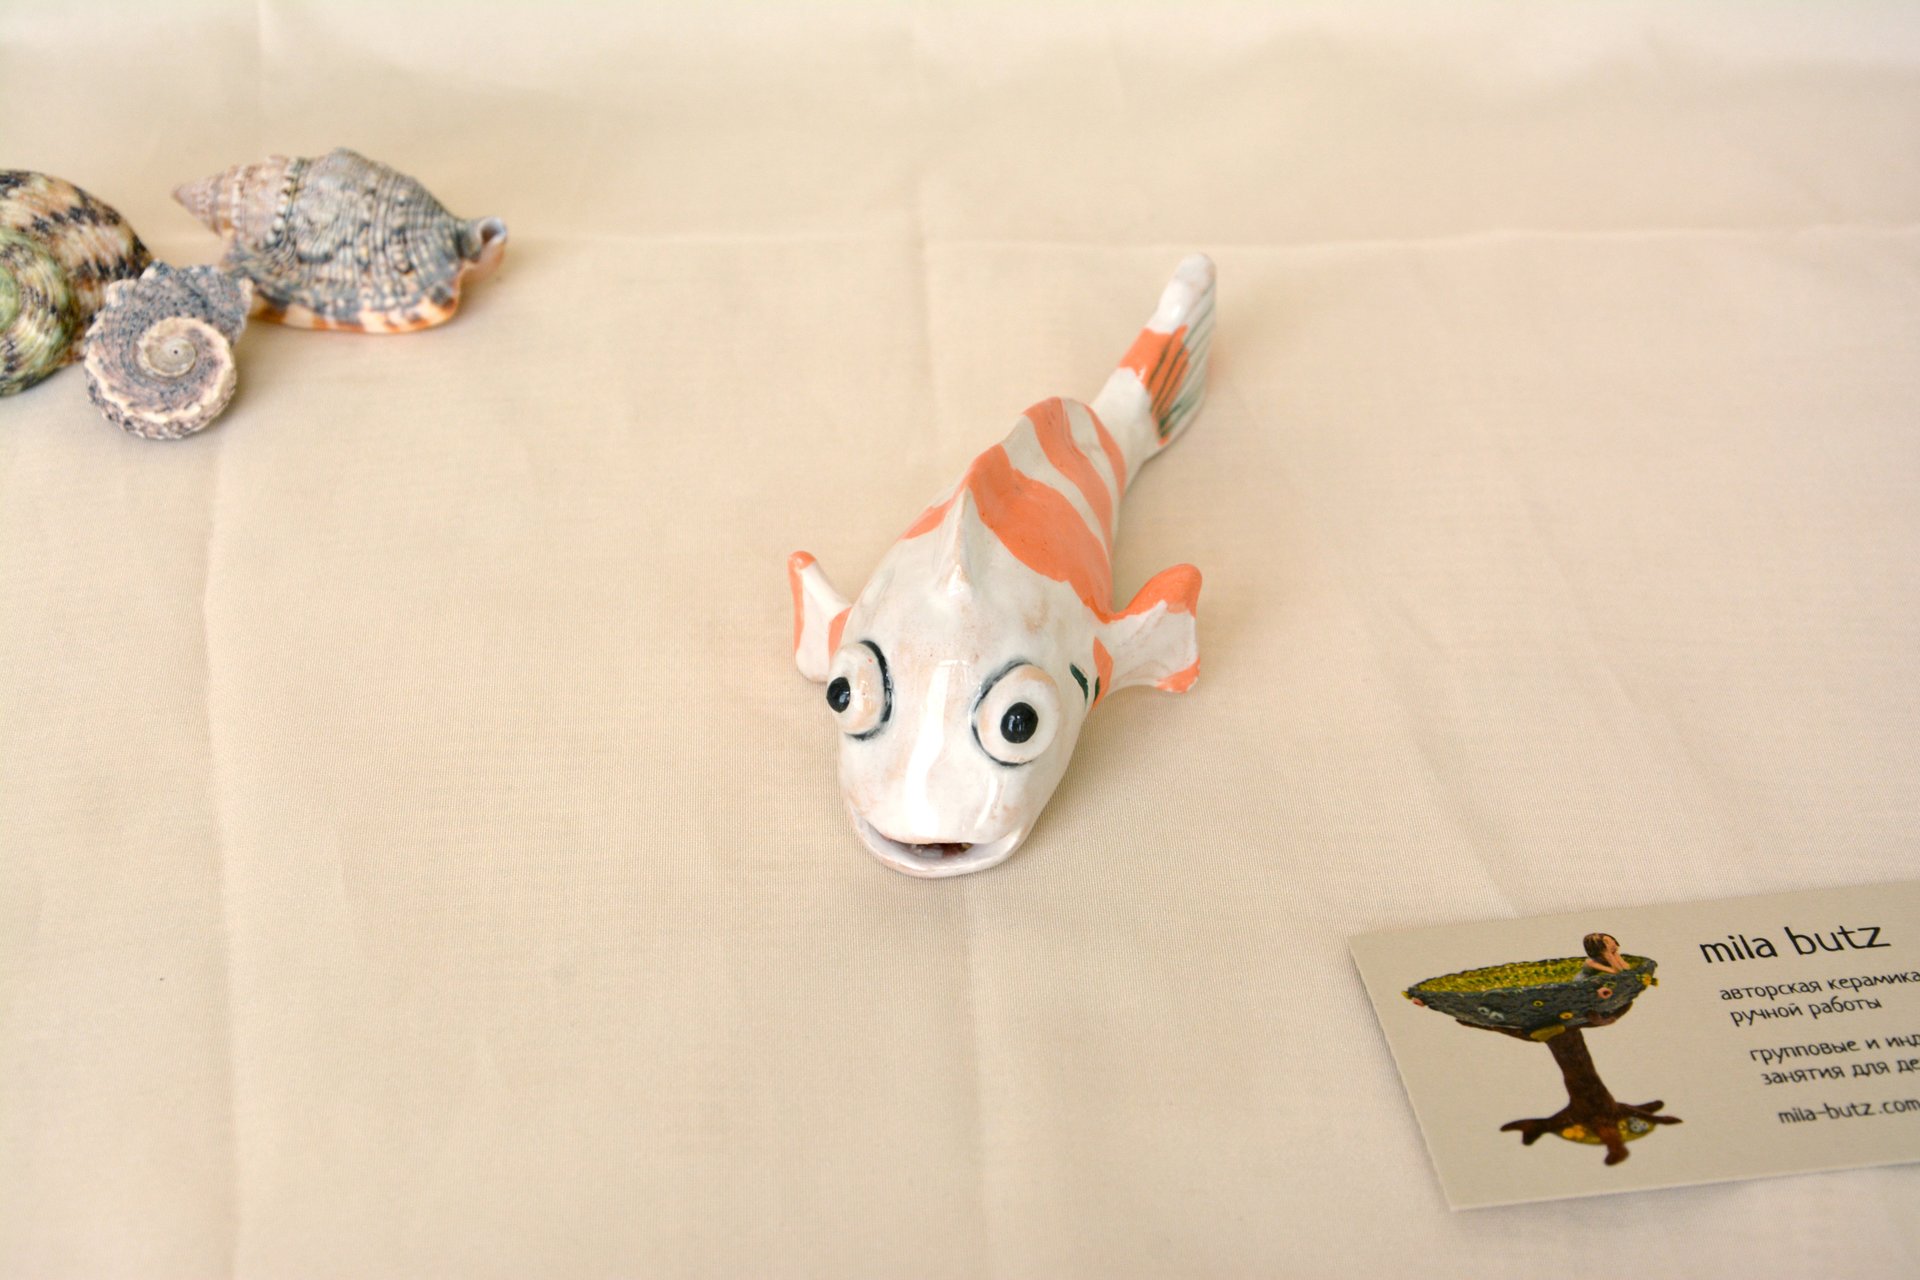 Керамическая Фигурка рыбки Карп Кои, длина - 14 см, ширина - 6 см, высота - 5 см, фото 5 из 6.